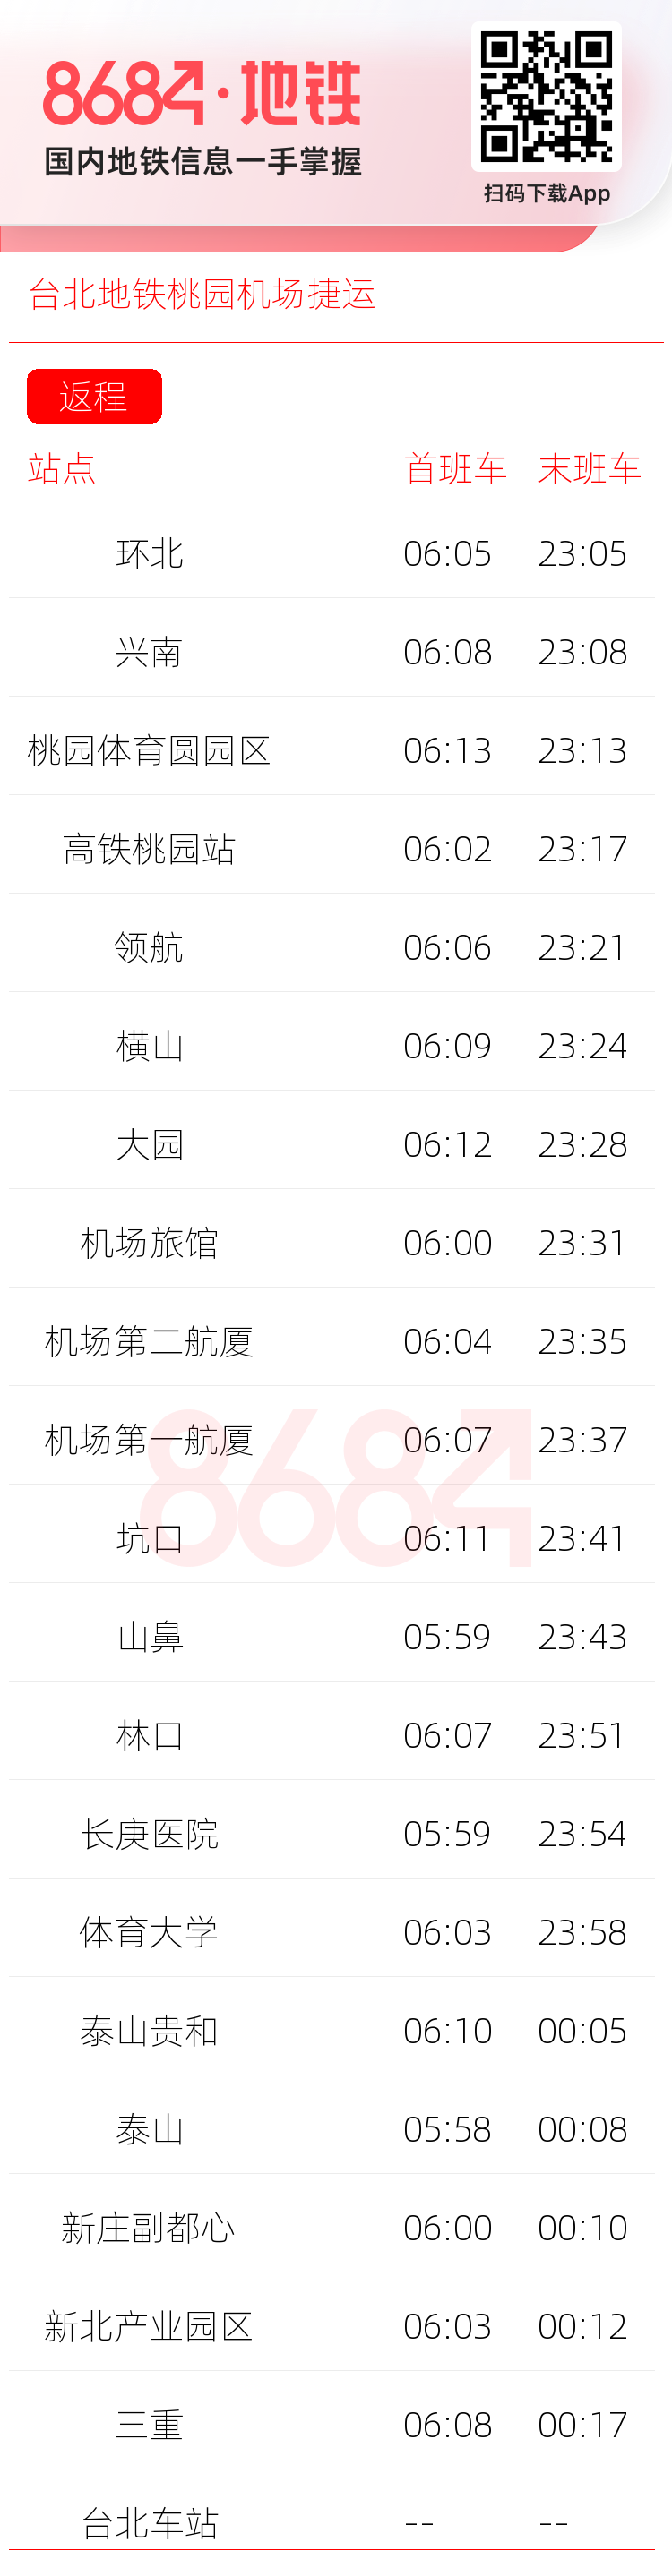 台北地铁桃园机场捷运运营时间表